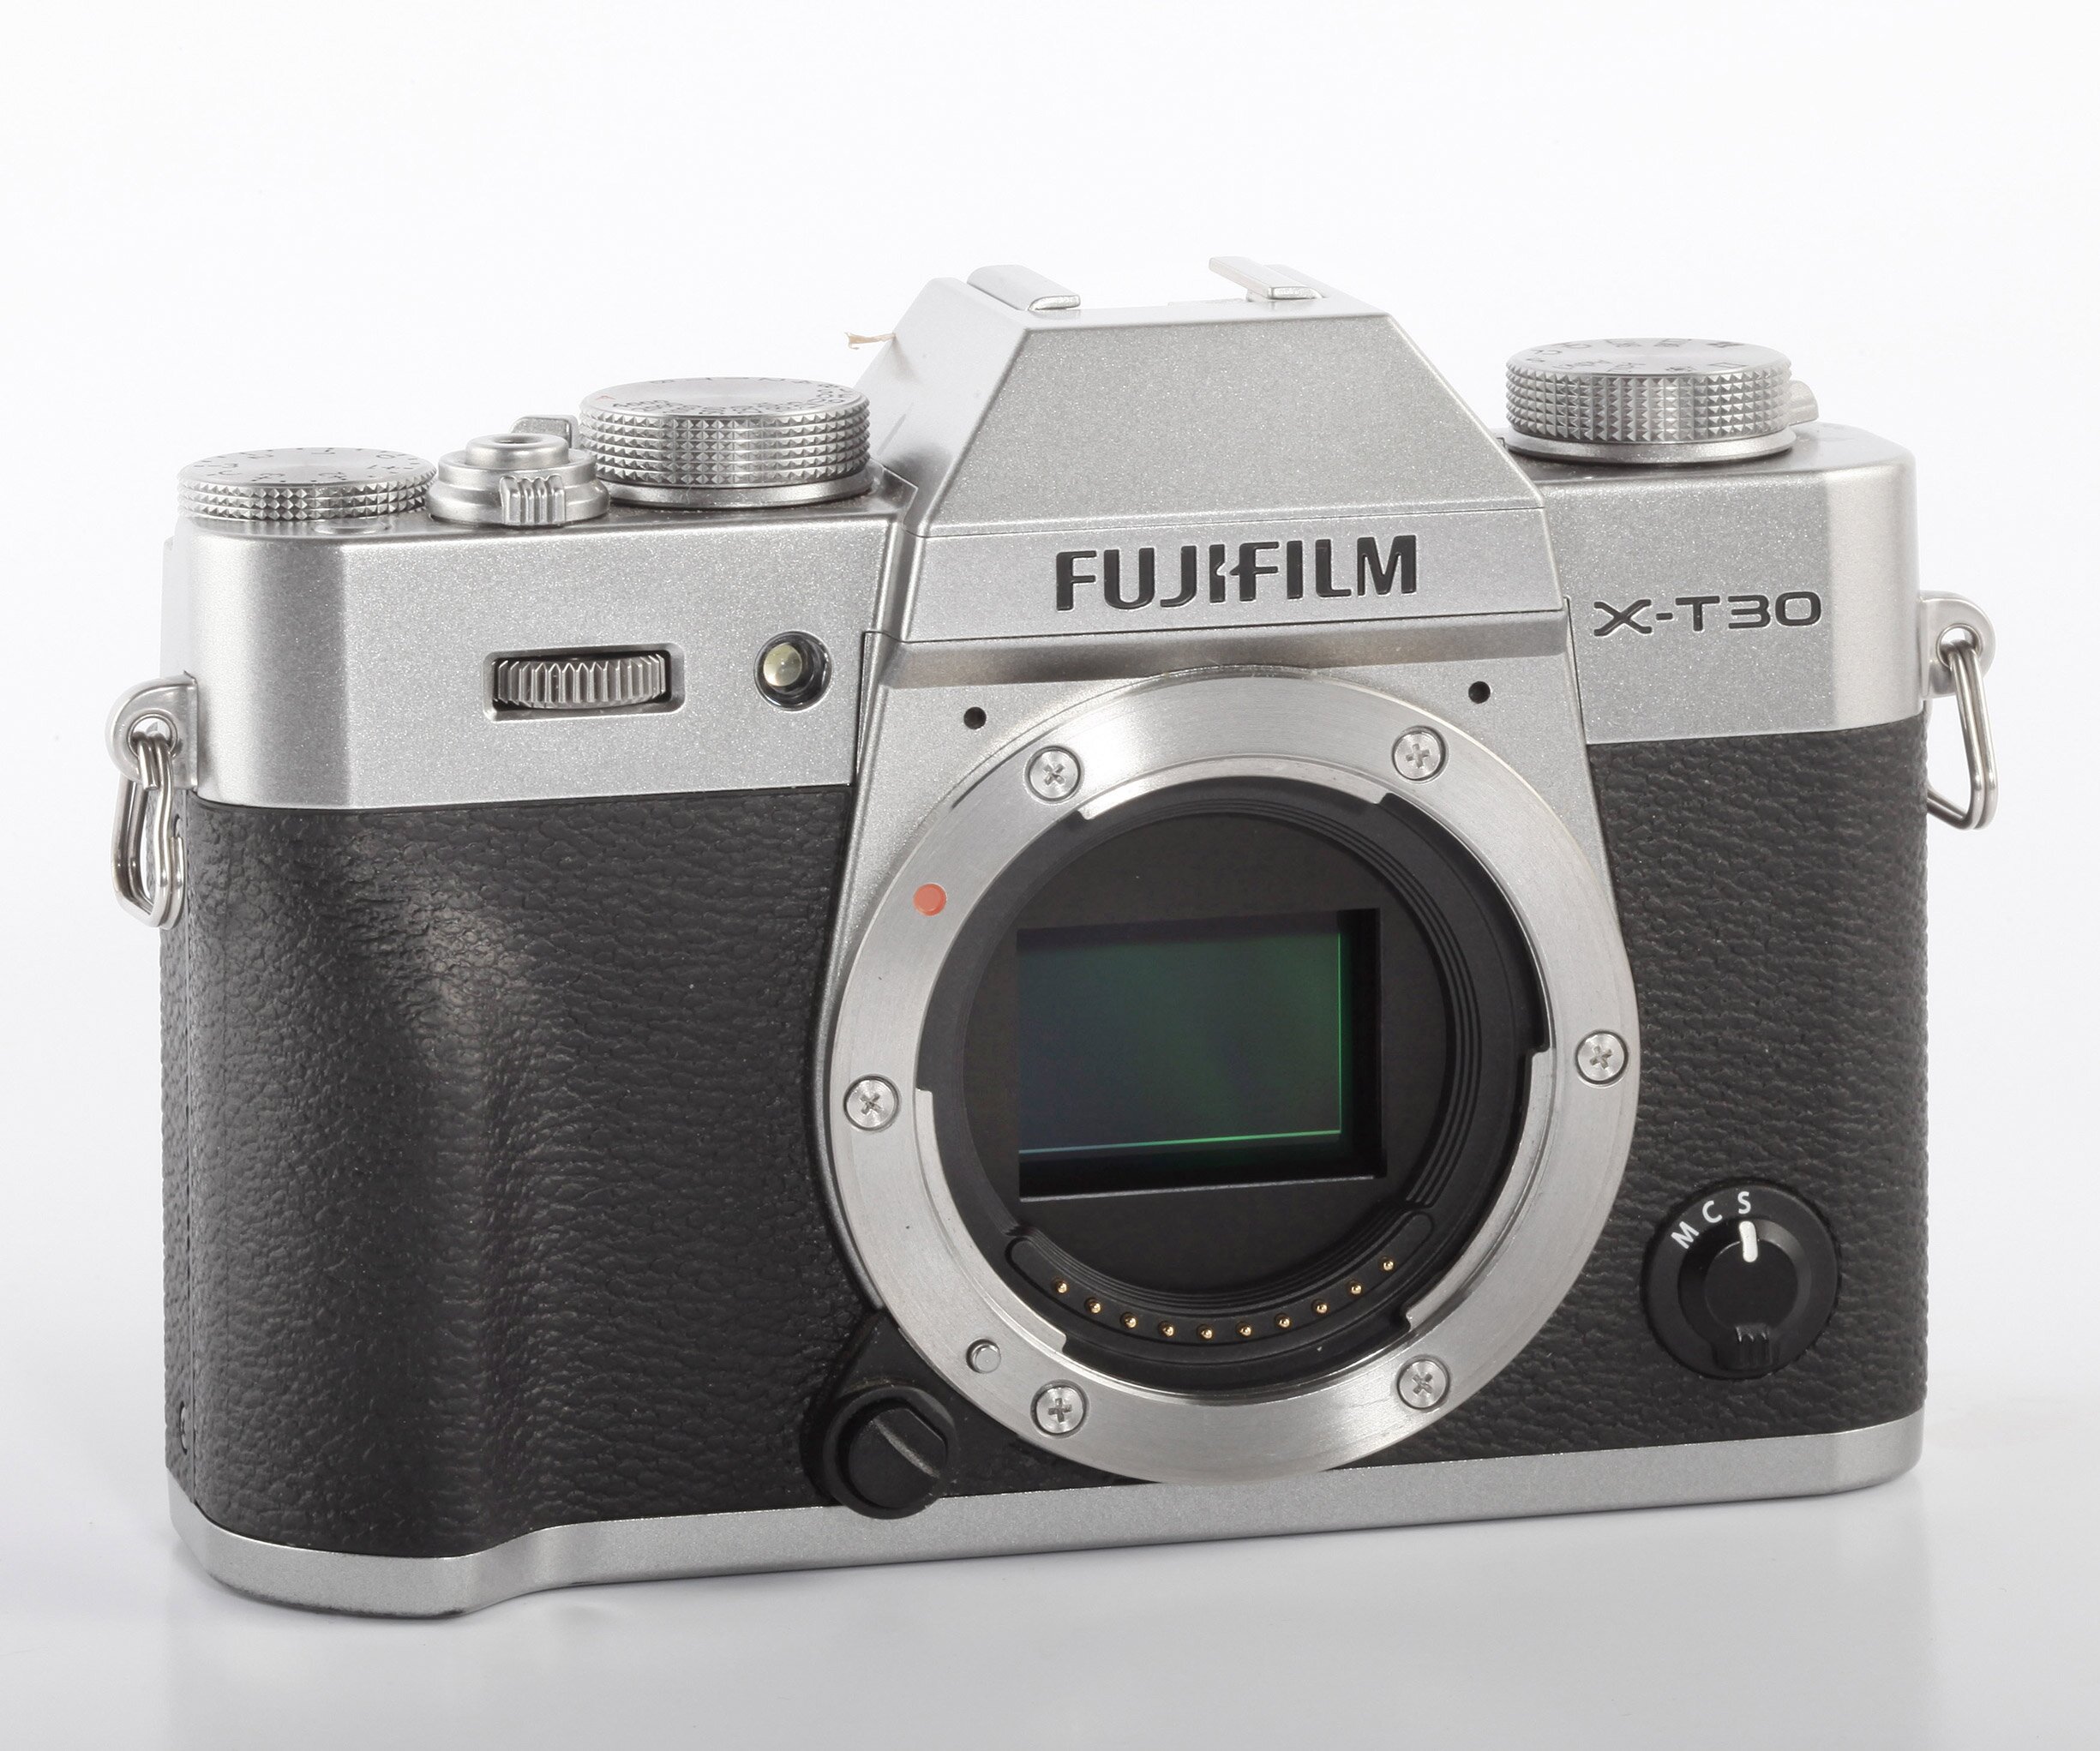 Fujifilm X-T30 chrom + Fujinon 18-55mm R LM OIS